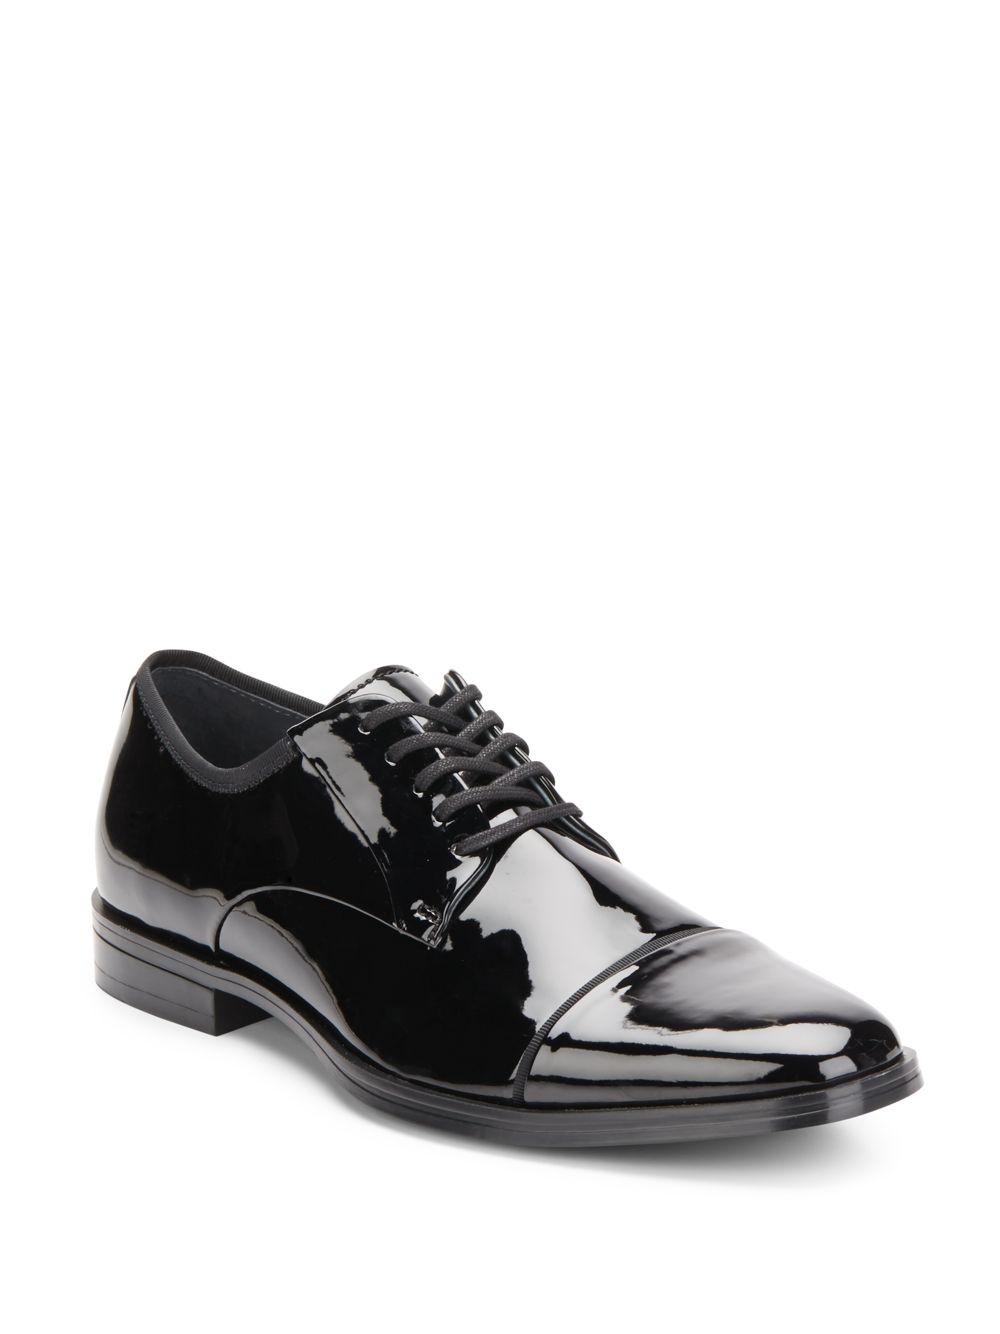 Lyst - Calvin Klein Klinton Faux Patent Leather Cap Toe Derby Shoes in ...